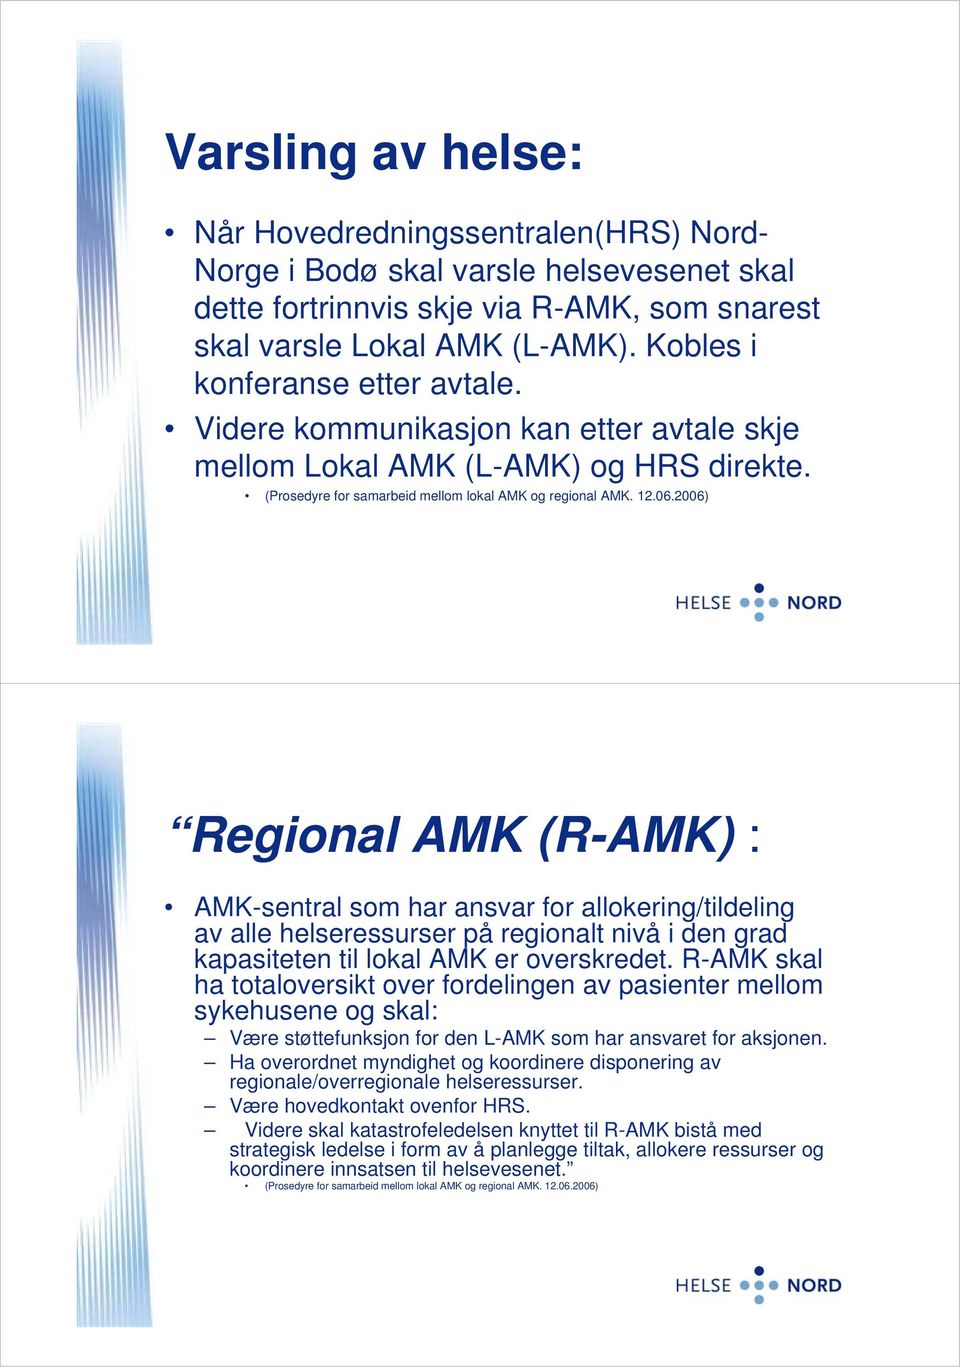 2006) Regional AMK (R-AMK) : AMK-sentral som har ansvar for allokering/tildeling av alle helseressurser på regionalt nivå i den grad kapasiteten til lokal AMK er overskredet.